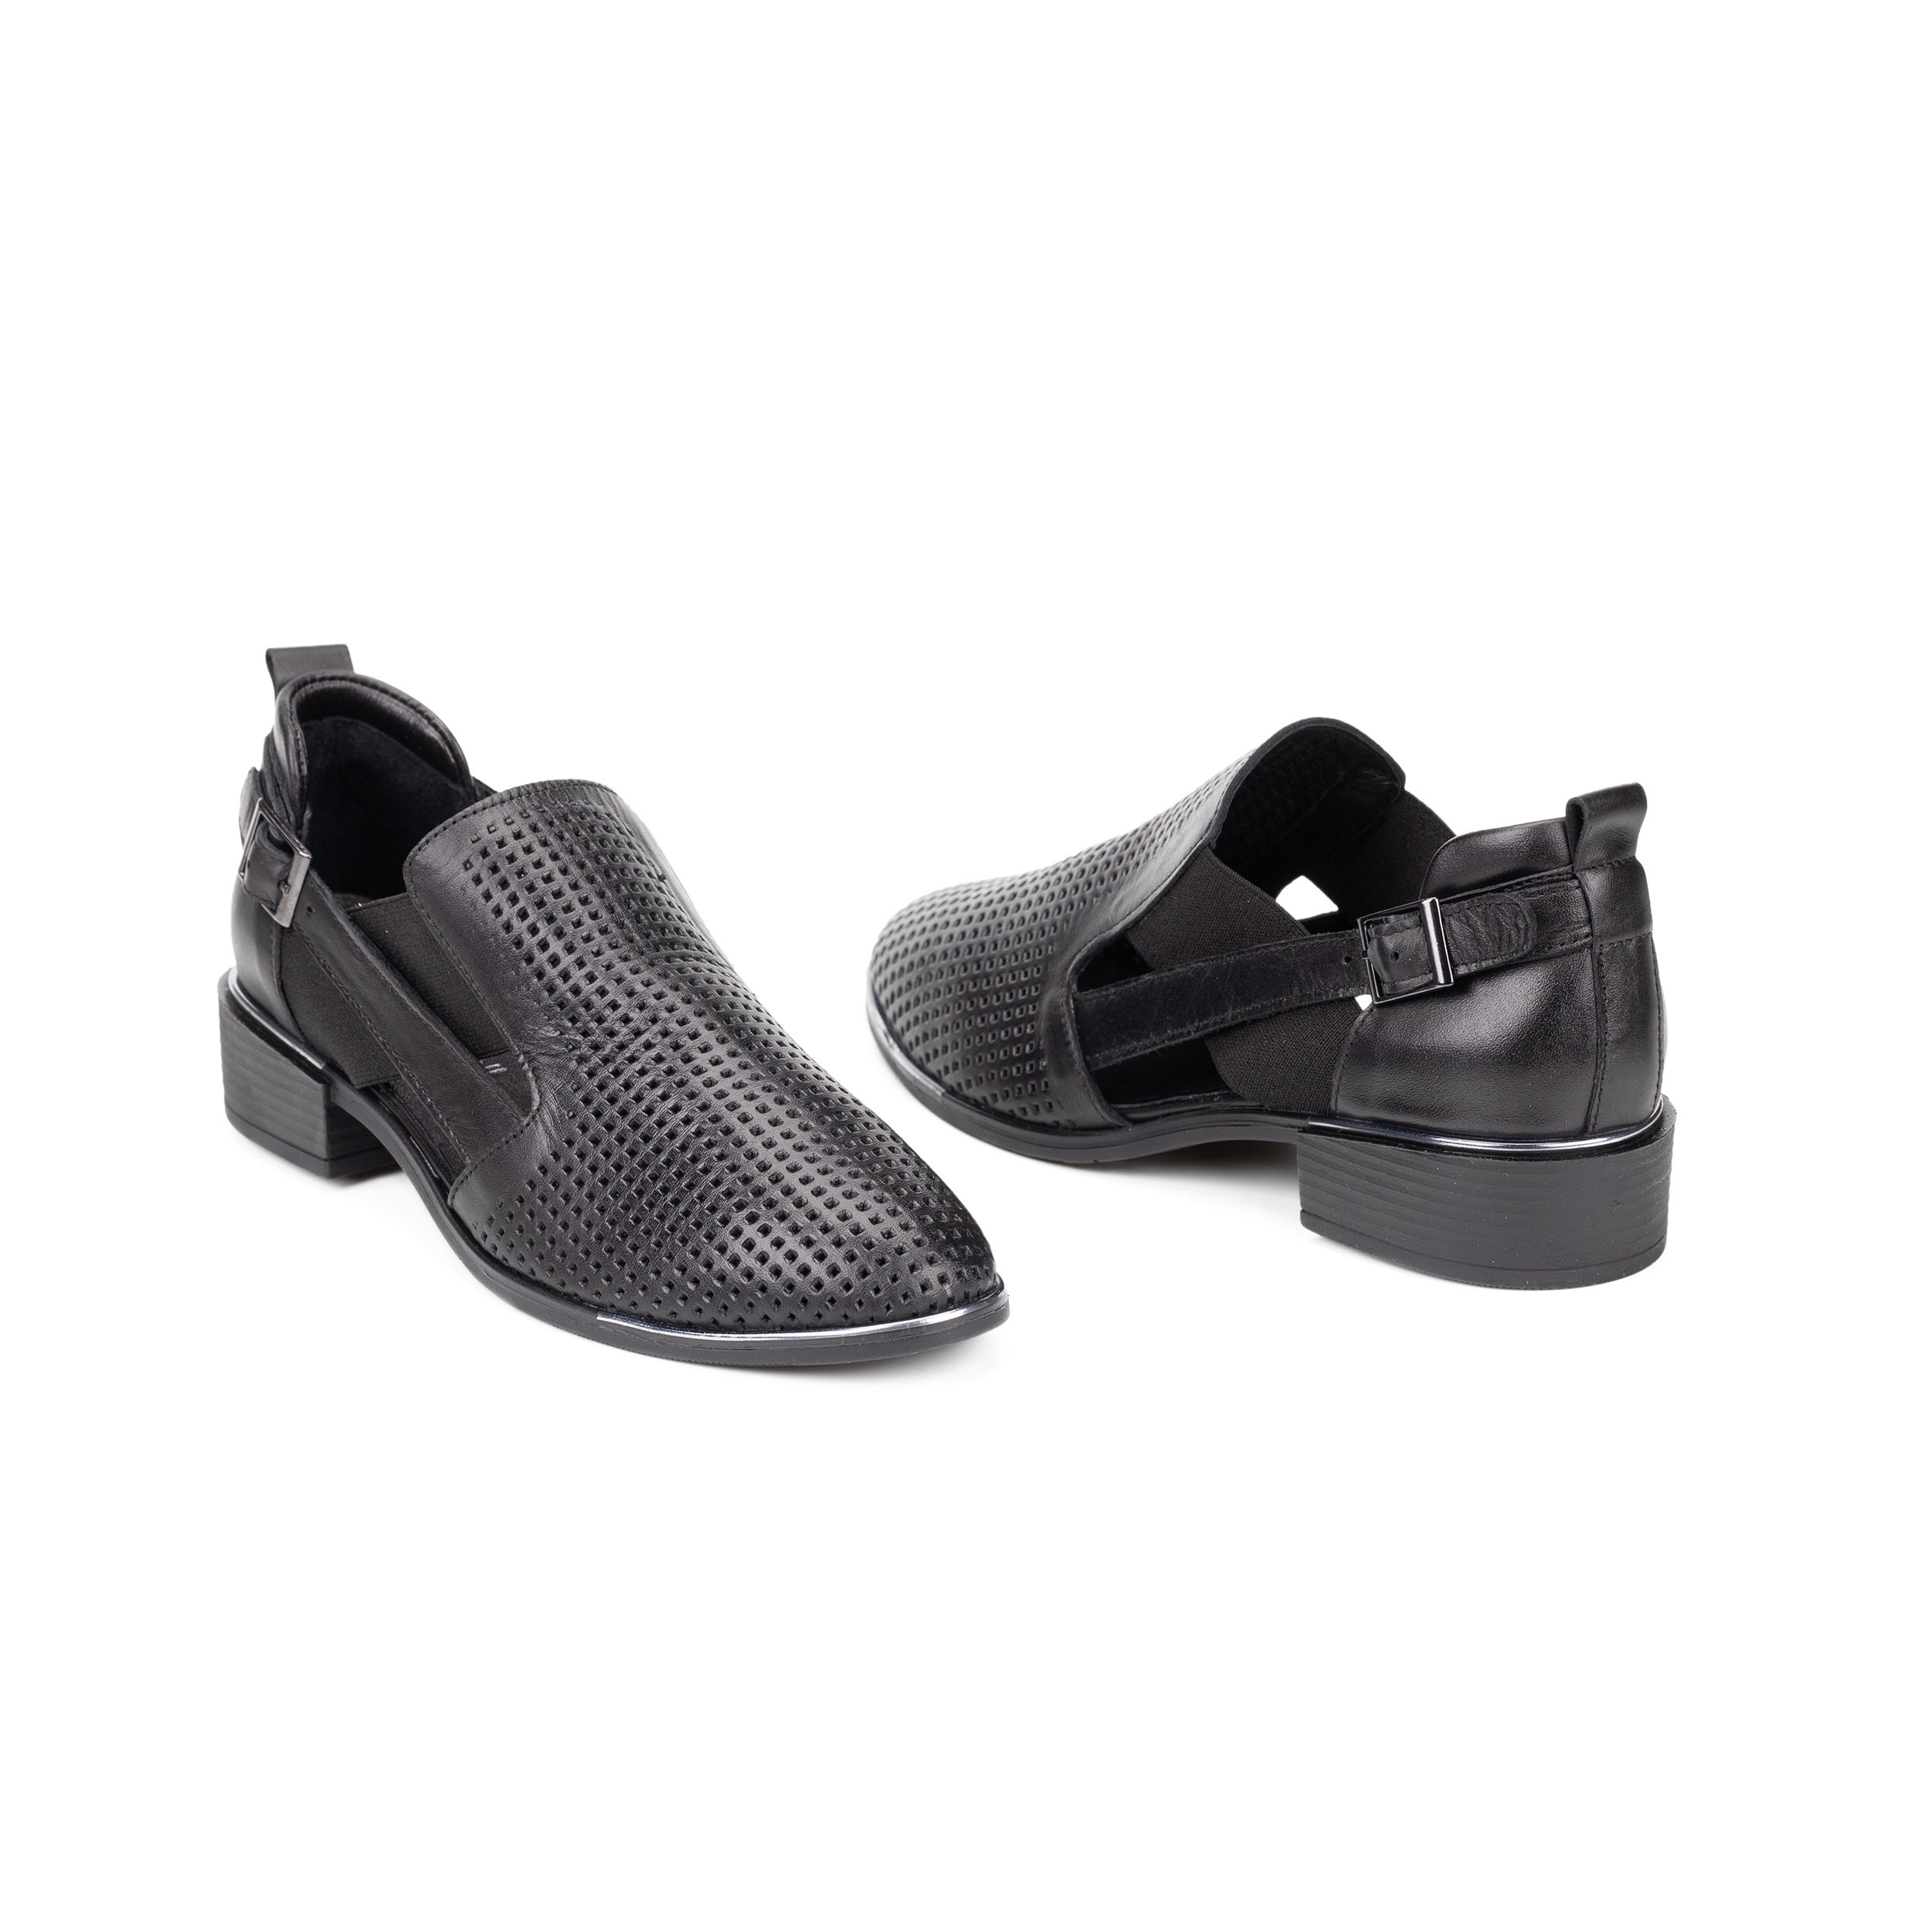 TwoEgoist Kadın Hakiki Deri Günlük Rahat Loafer - Babet Ayakkabı, Renk: Siyah, Beden: 36